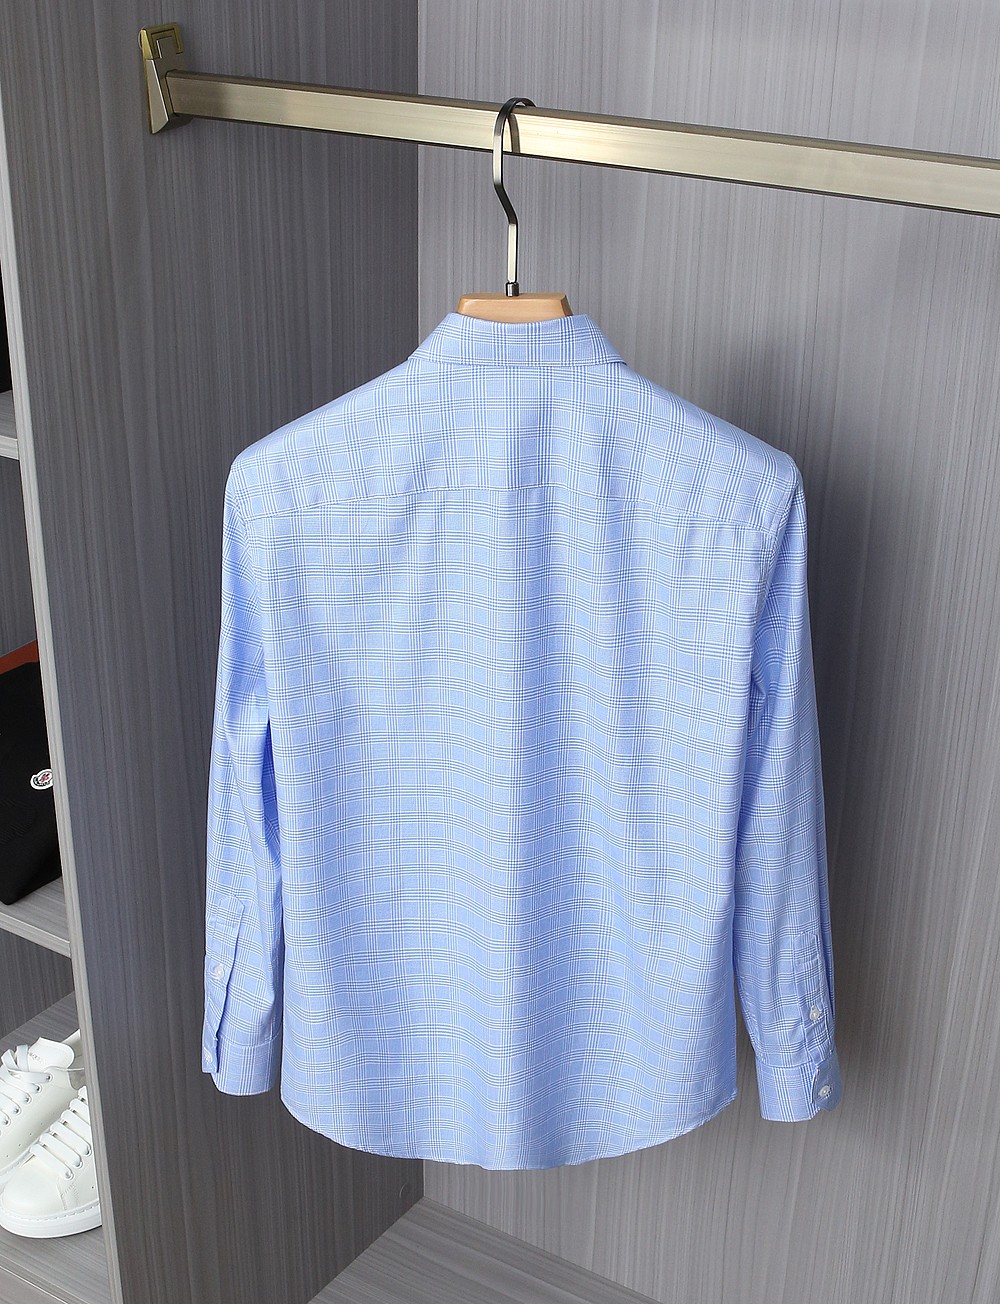 新品KITON家纯手工艺出品最新春夏格子衬衫款香港贸易公司渠道为顶级人士打造量身定制的服装专柜同款！一个